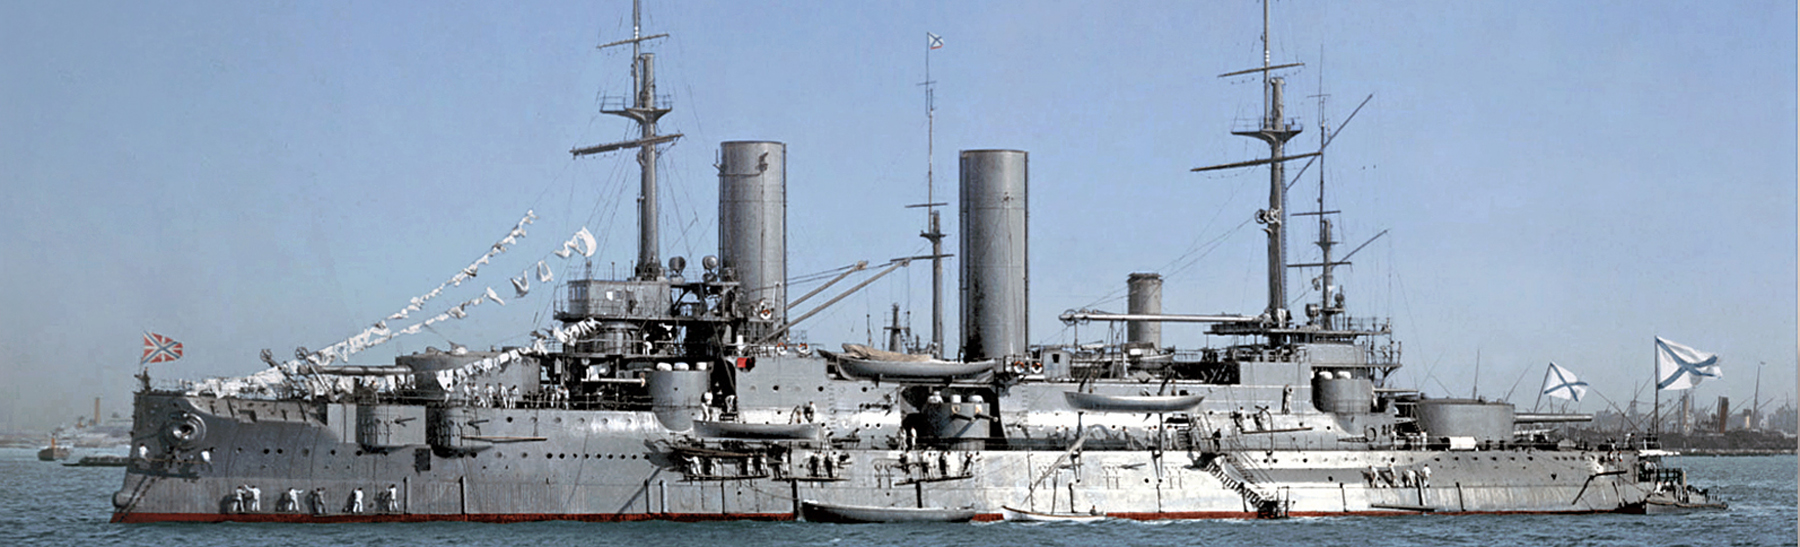 Borodino Pre-dreadnought 1905 Navire Russe 1:1100 DeAgostini Bateau T61 8 